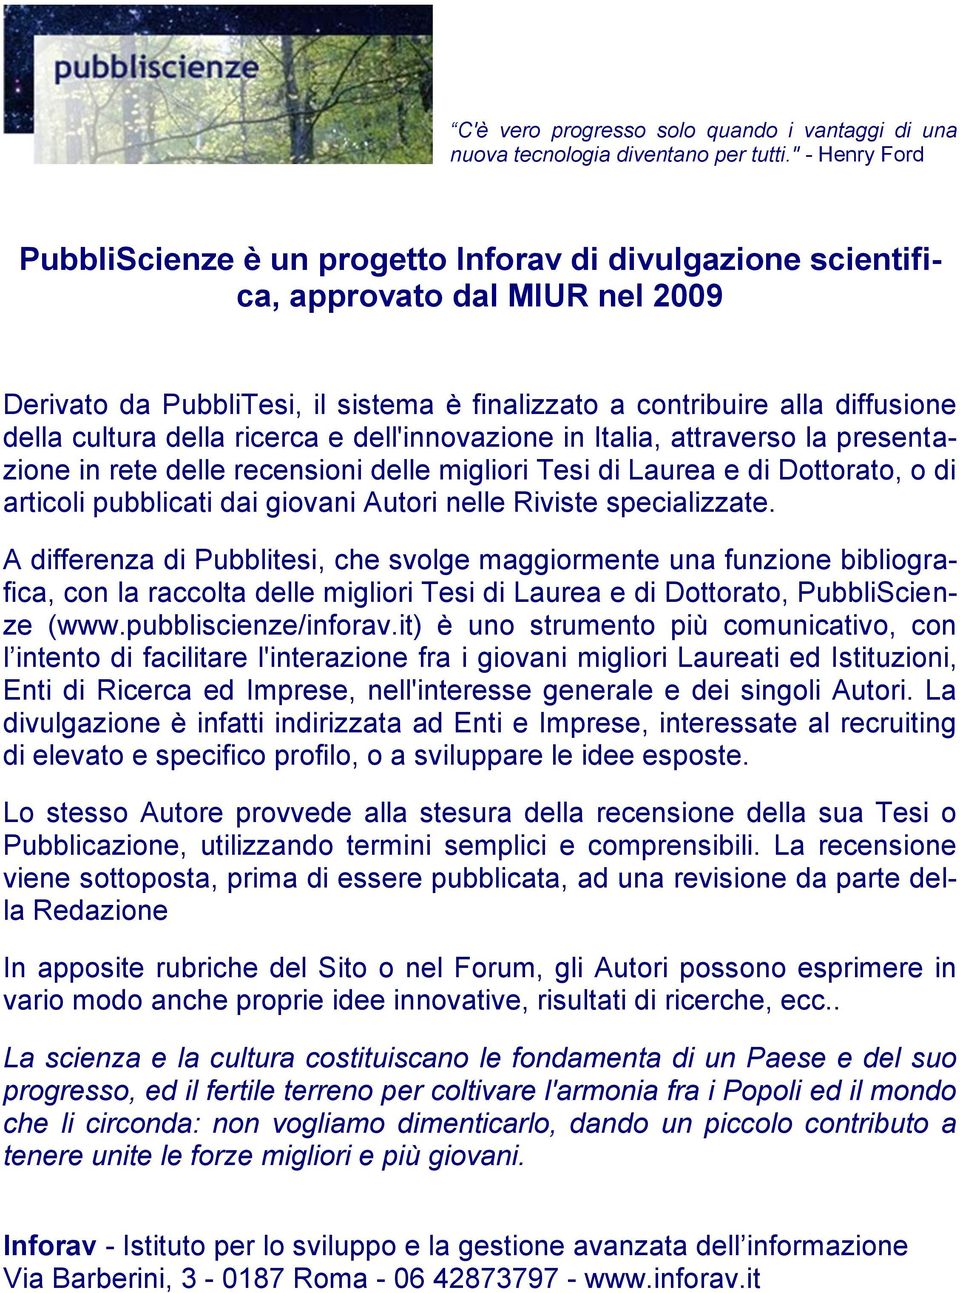 cultura della ricerca e dell'innovazione in Italia, attraverso la presentazione in rete delle recensioni delle migliori Tesi di Laurea e di Dottorato, o di articoli pubblicati dai giovani Autori